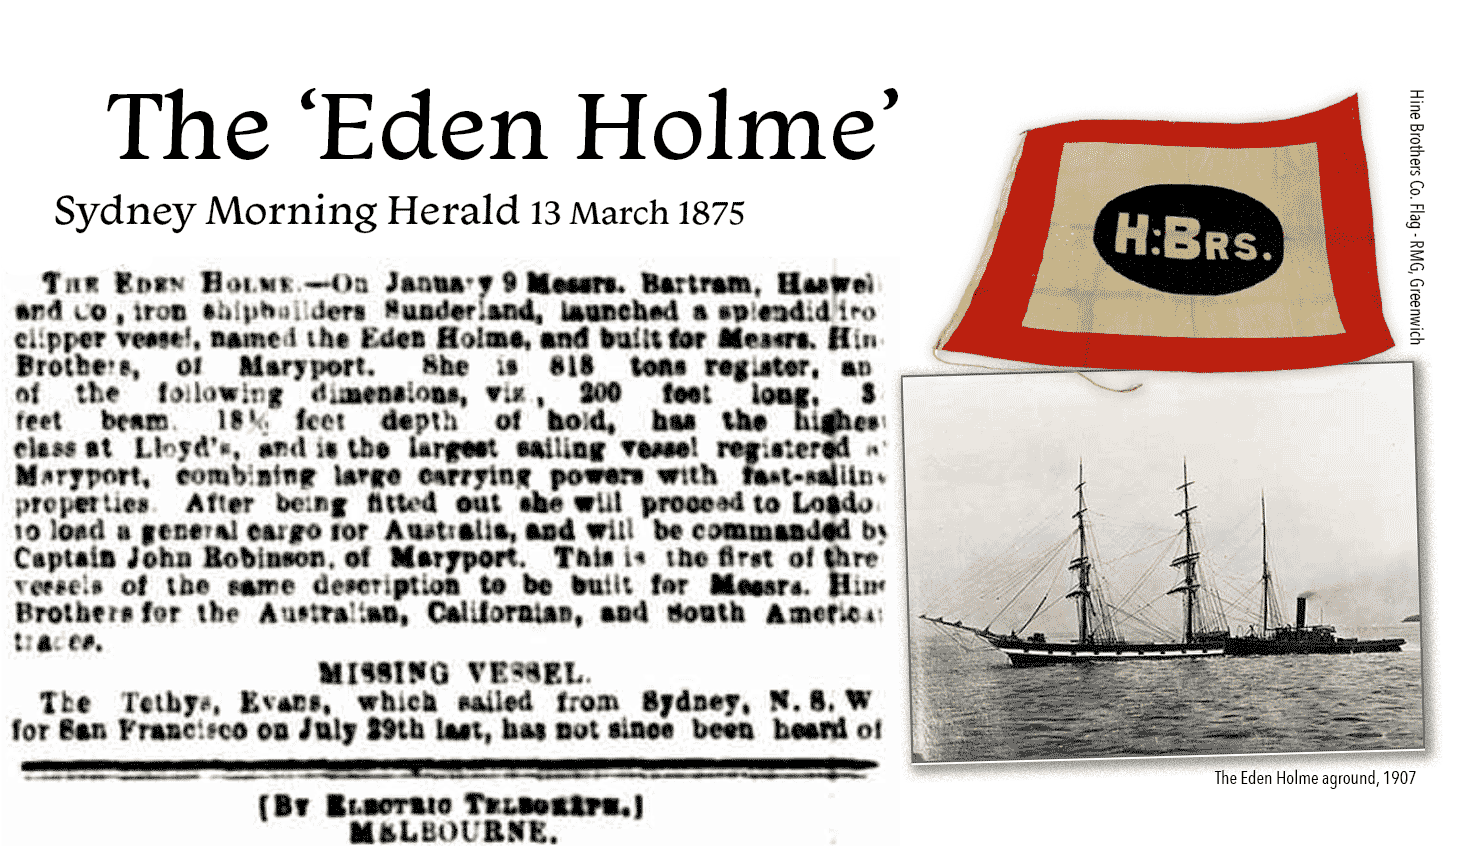 Eden Holme clippership 1875-1907